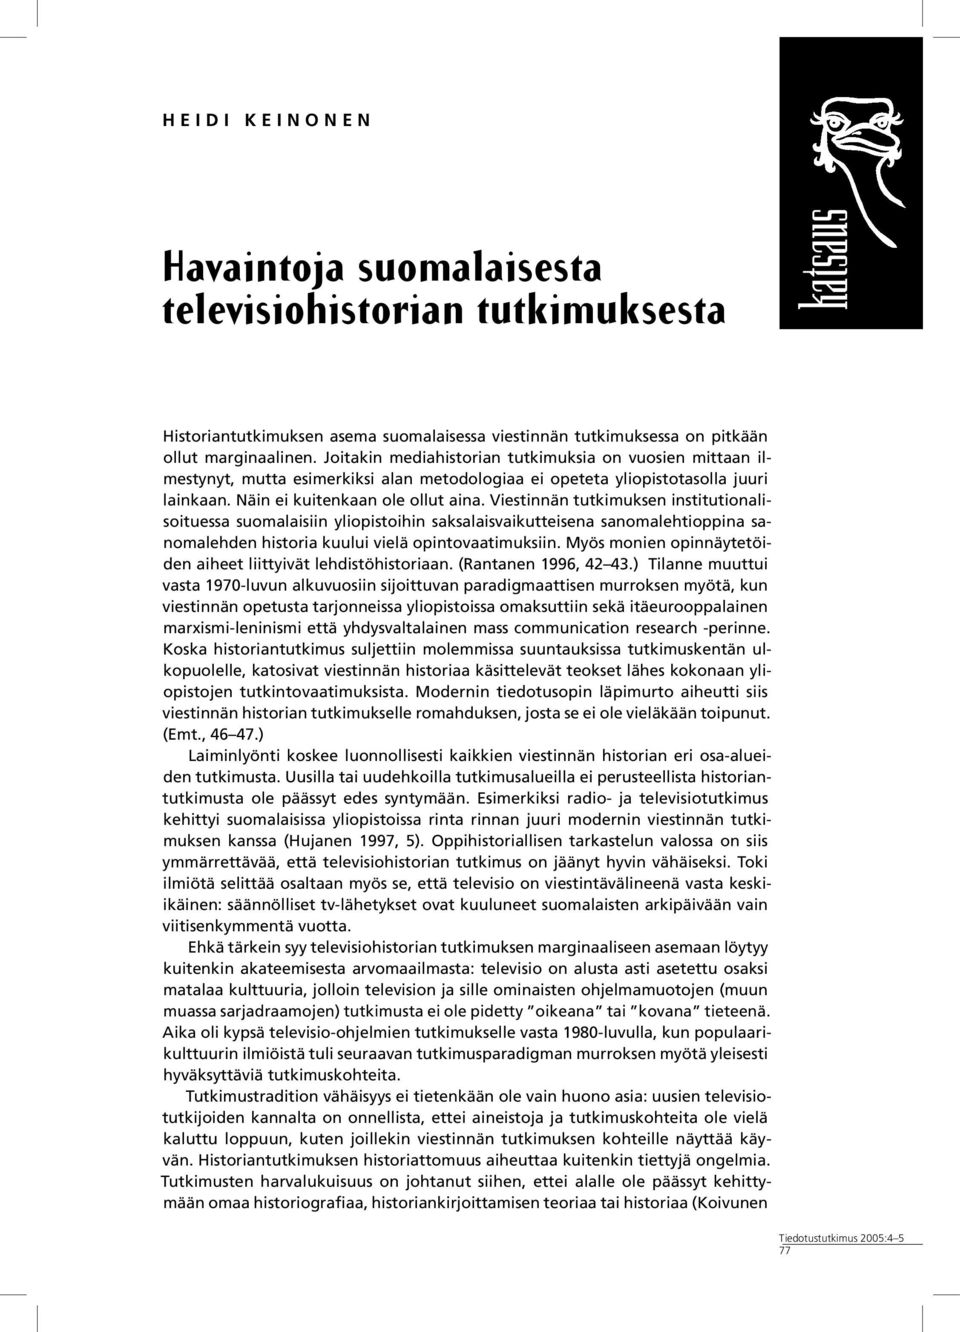 Viestinnän tutkimuksen institutionalisoituessa suomalaisiin yliopistoihin saksalaisvaikutteisena sanomalehtioppina sanomalehden historia kuului vielä opintovaatimuksiin.